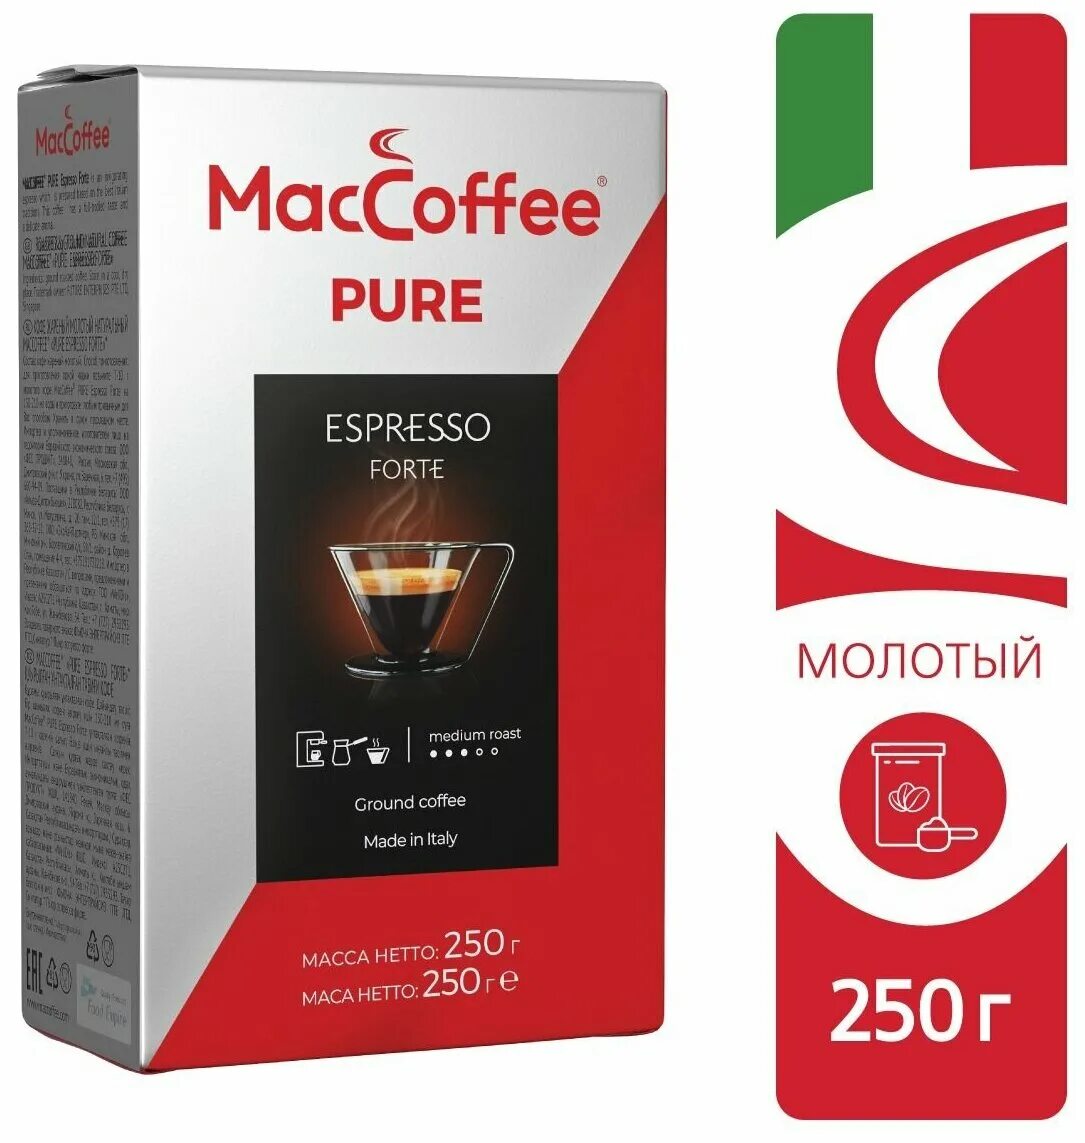 Купить форте 250. Кофе MACCOFFEE Pure Espresso Forte. Кофе Мак кофе Пьюр эспрессо форте зерно 250г. MACCOFFEE Pure Espresso Forte молотый. Кофе Маккофе жаренный молотый натуральный Pure Espresso Forte 250г*12.